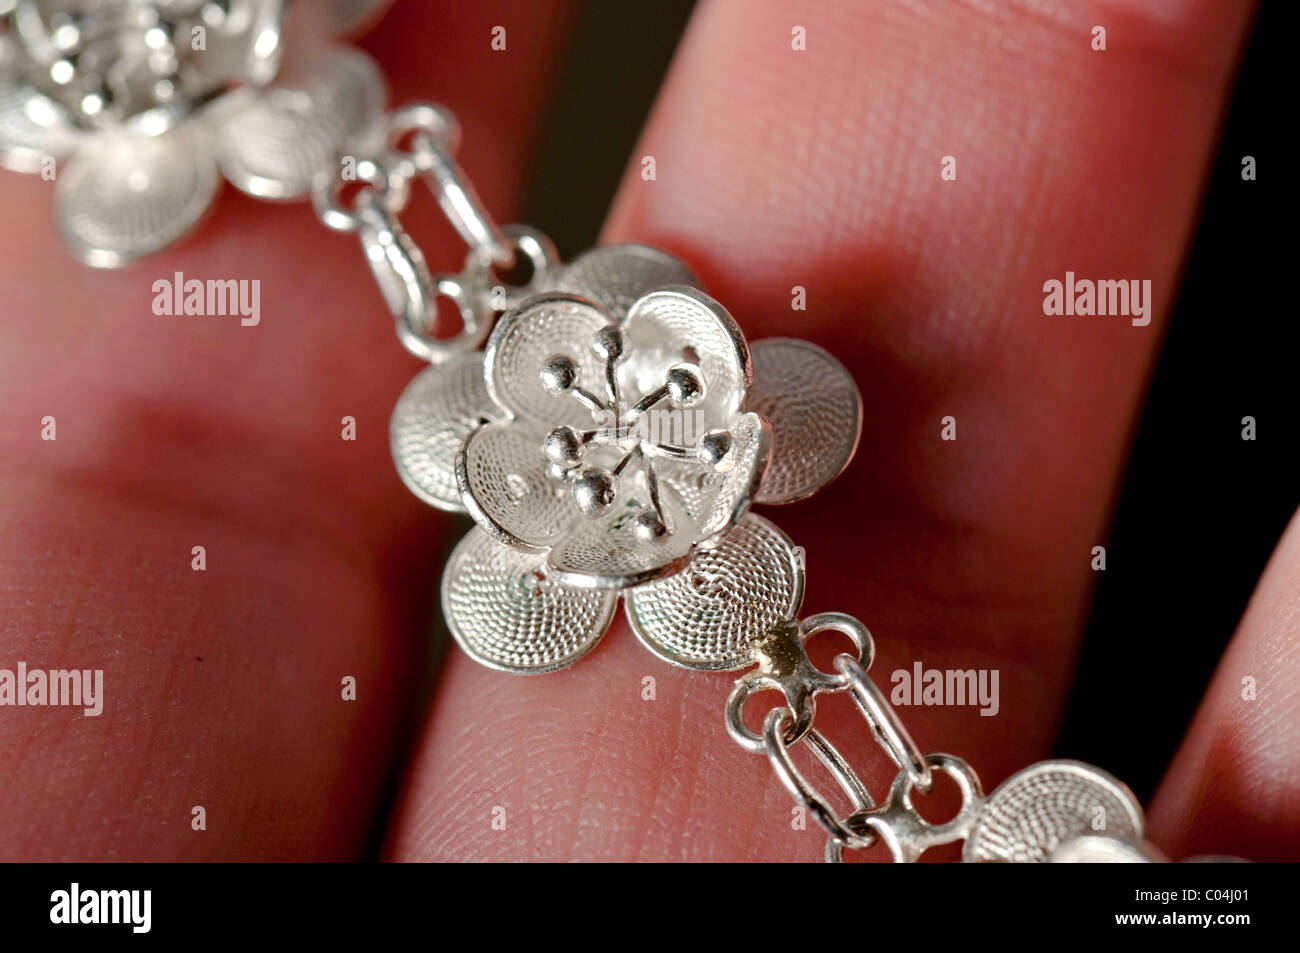 Luxury jewelry bracelet in silver rappresenting a loto flower Stock Photo